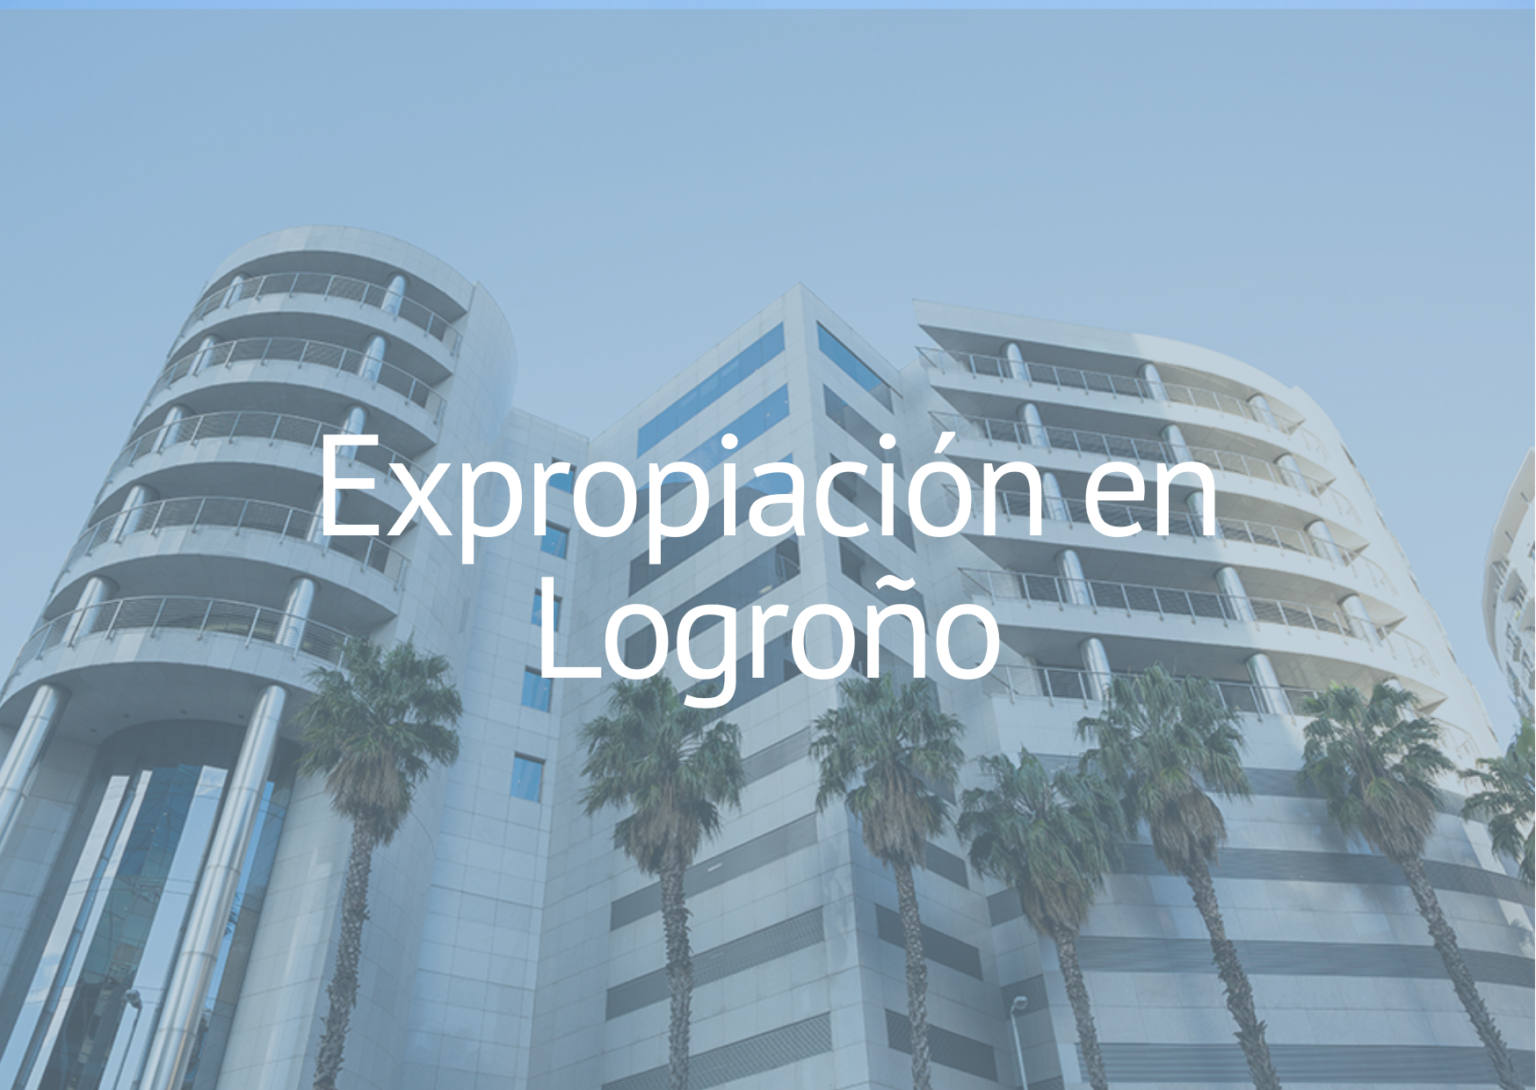 Expropiación en Logroño - Abogados Expropiaciones - Justiprecio